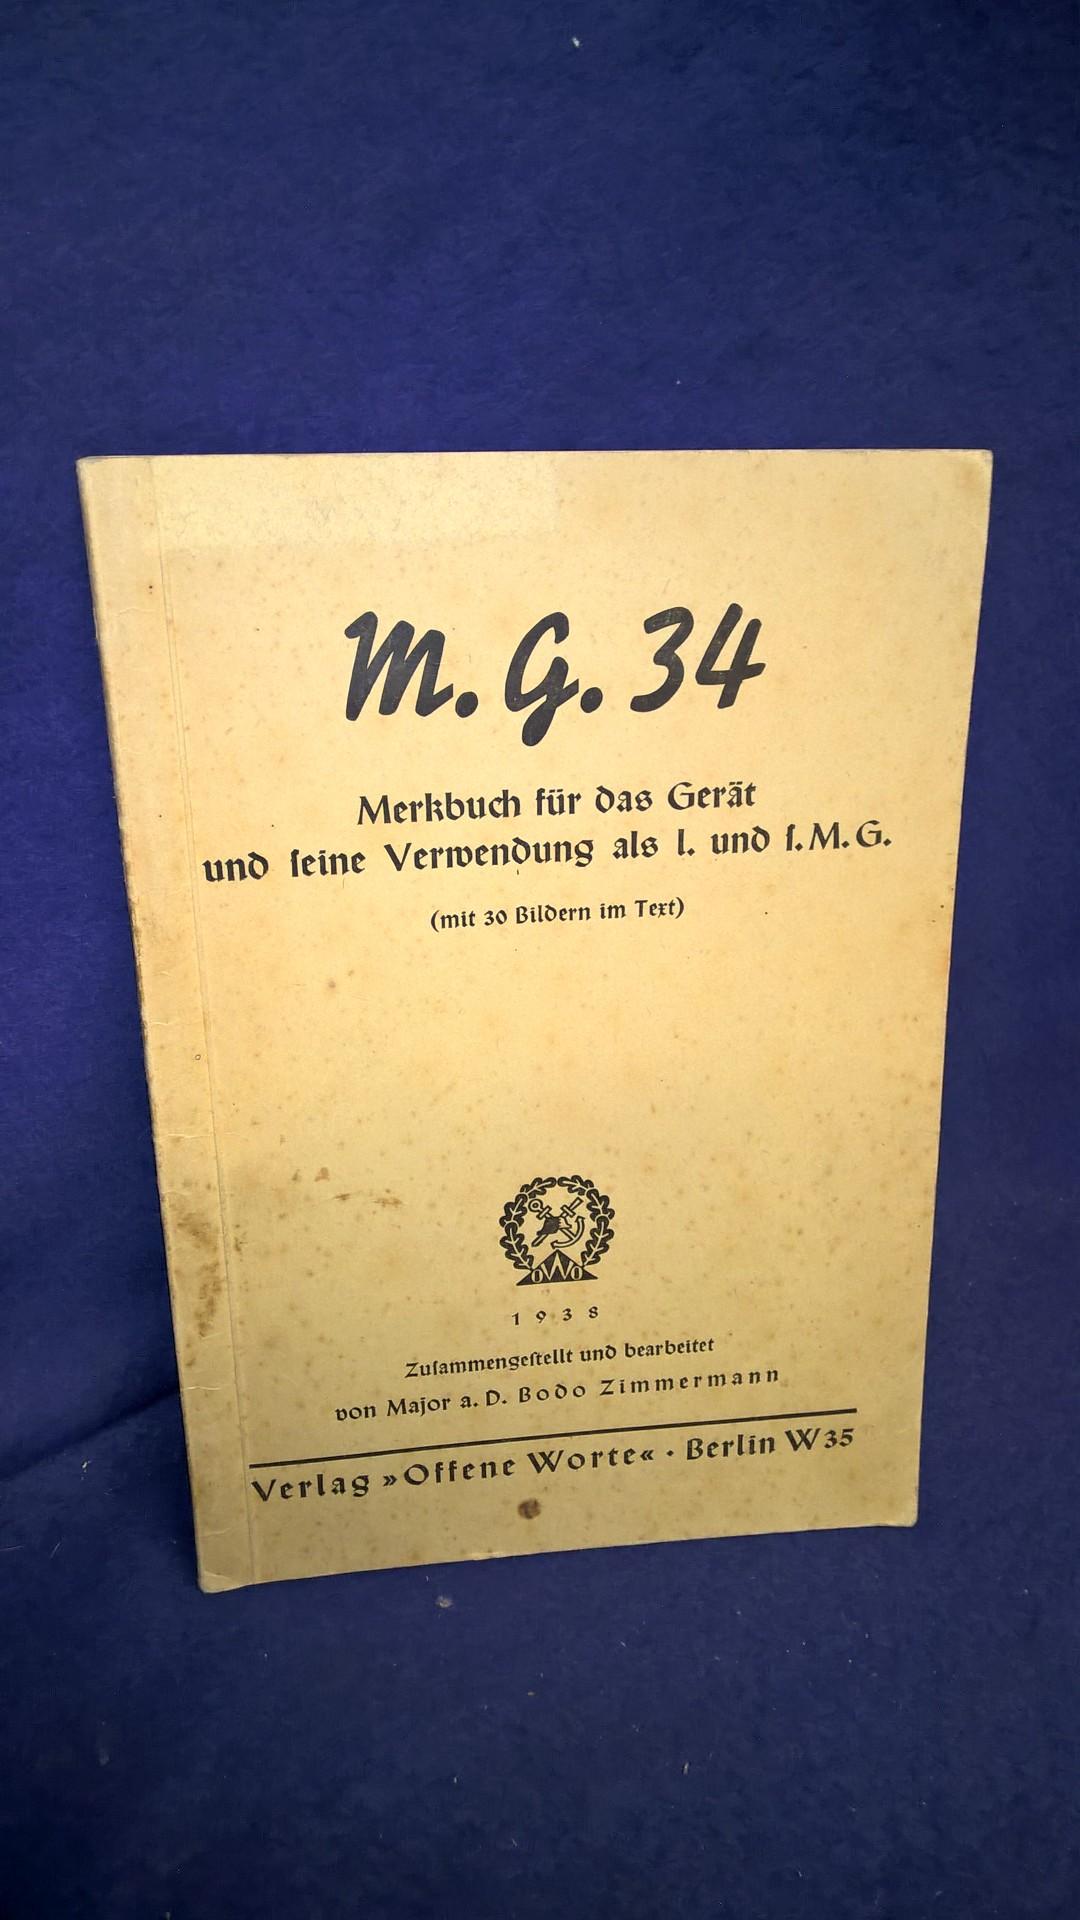 M.G.34. Merkbuch für das Gerät und seine Verwendung als l. und s.M.G. Seltenes Orginal!